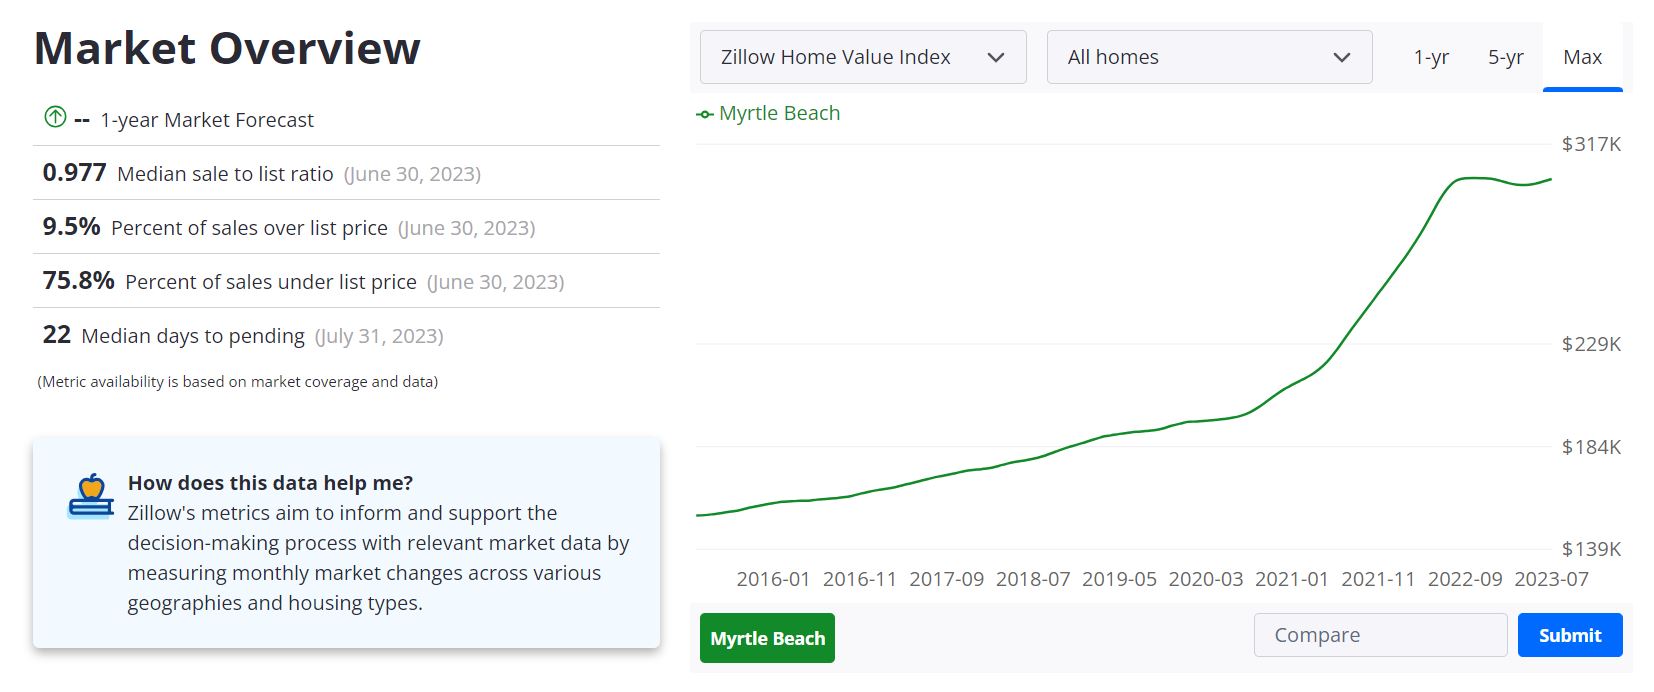 Myrtle Beach Housing Market Forecast 2023-2024